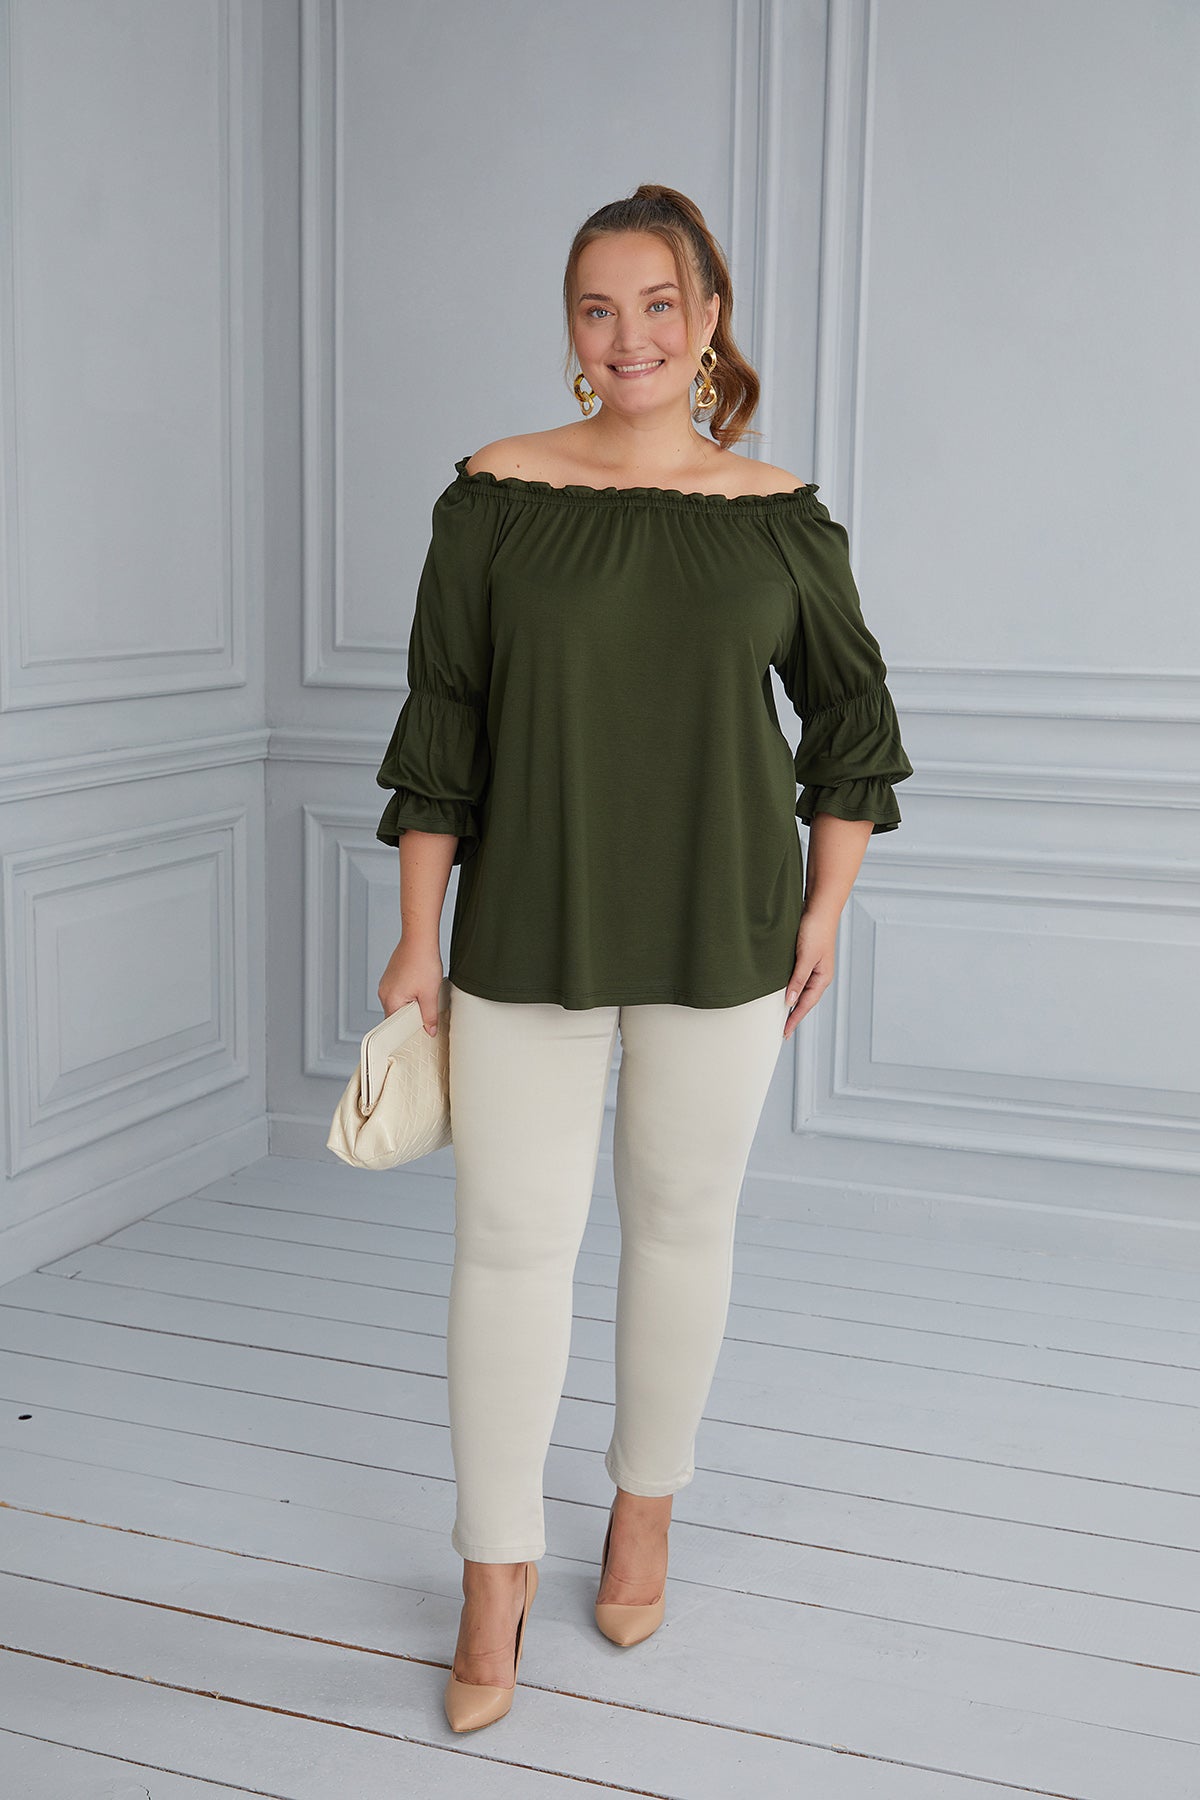 Γυναικεία μπλούζα "Κάρμεν" σε μεγάλα μεγέθη - Πράσινο